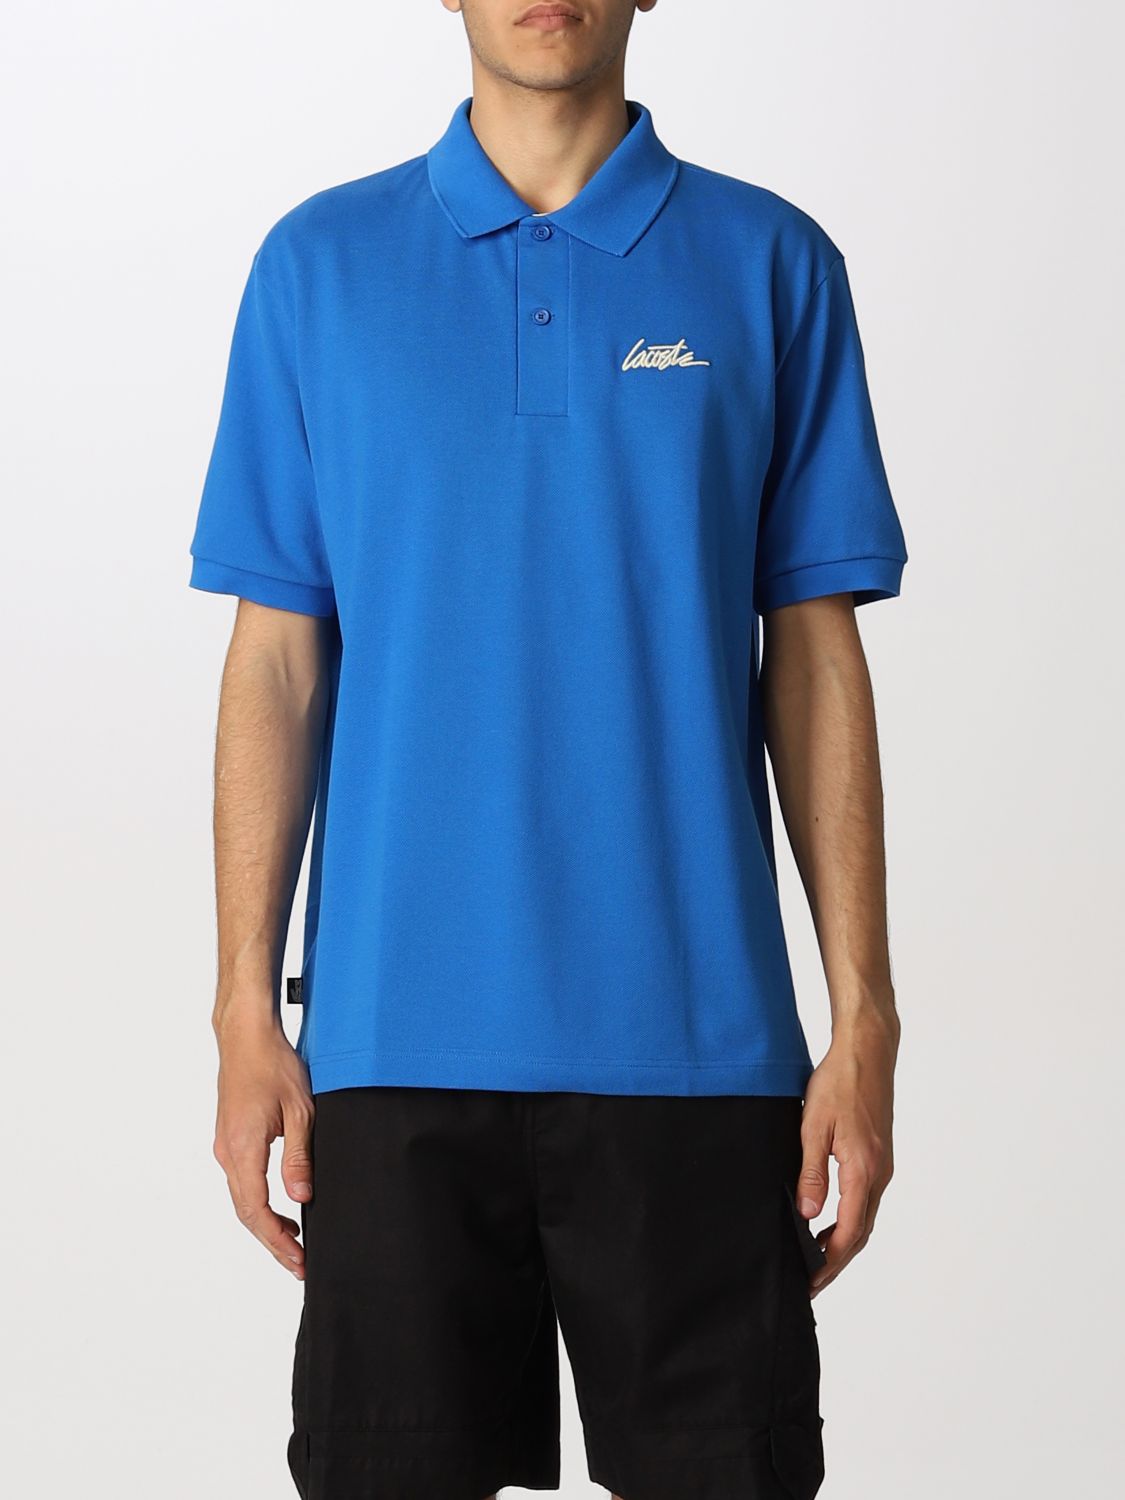 Polo shirt Lacoste L!Ve: Polo shirt men Lacoste L!ve royal blue 1